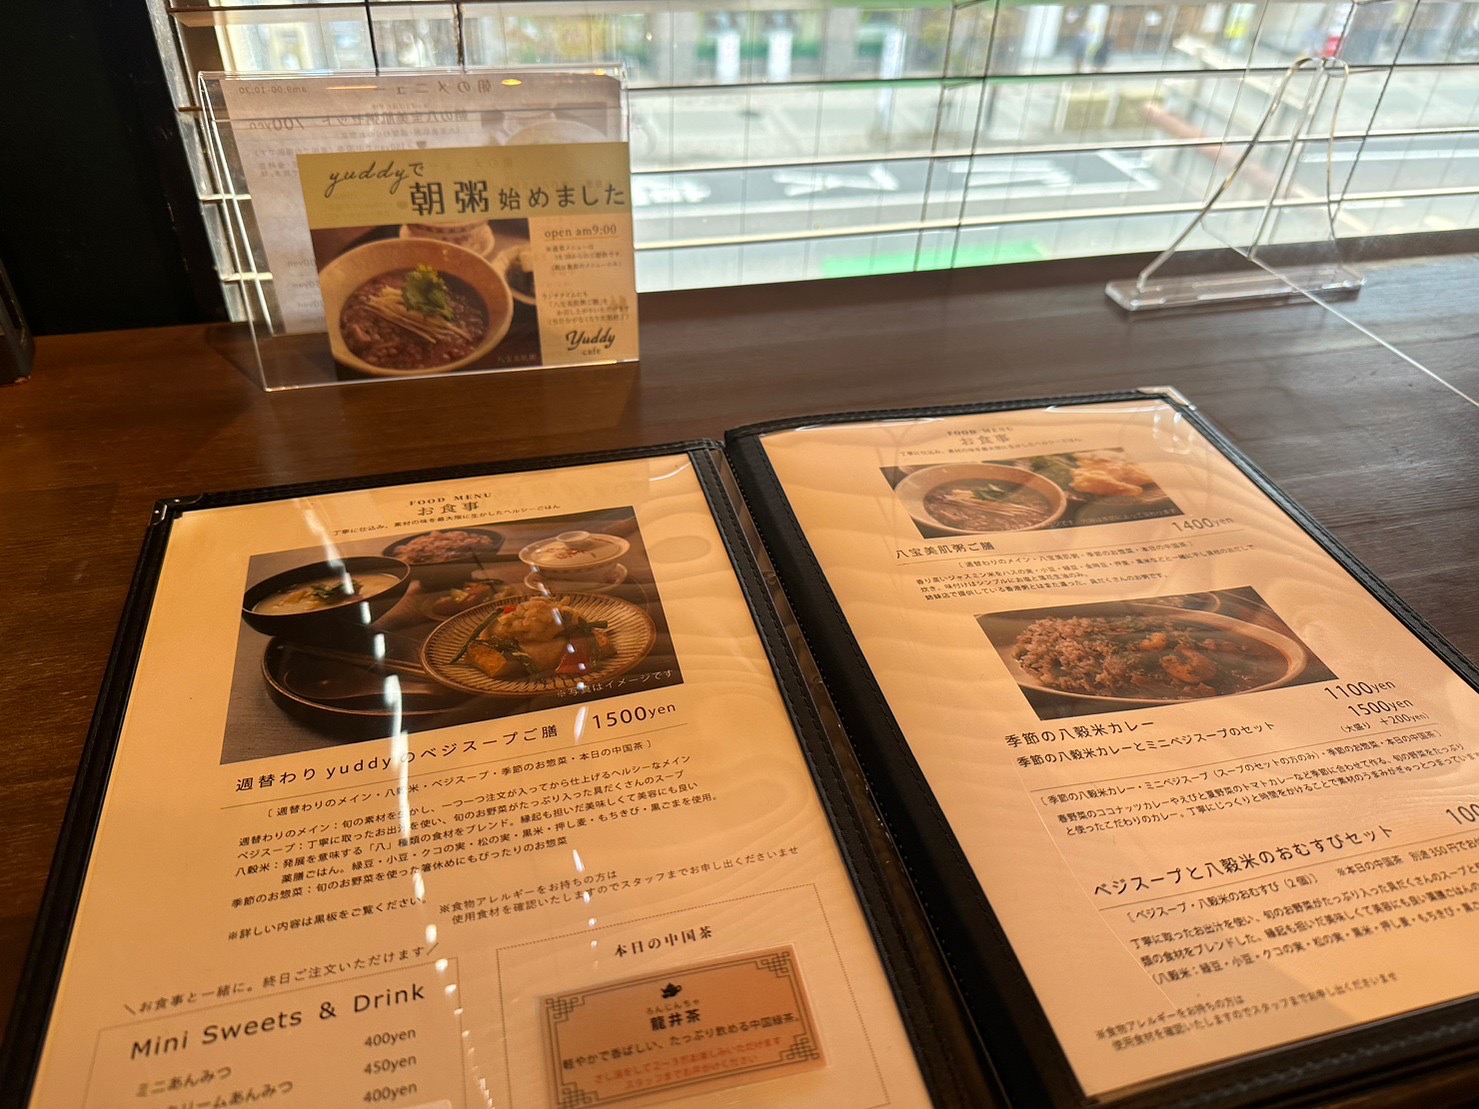 Cafe yuddy|神戸市東灘区岡本Cafe yuddy|